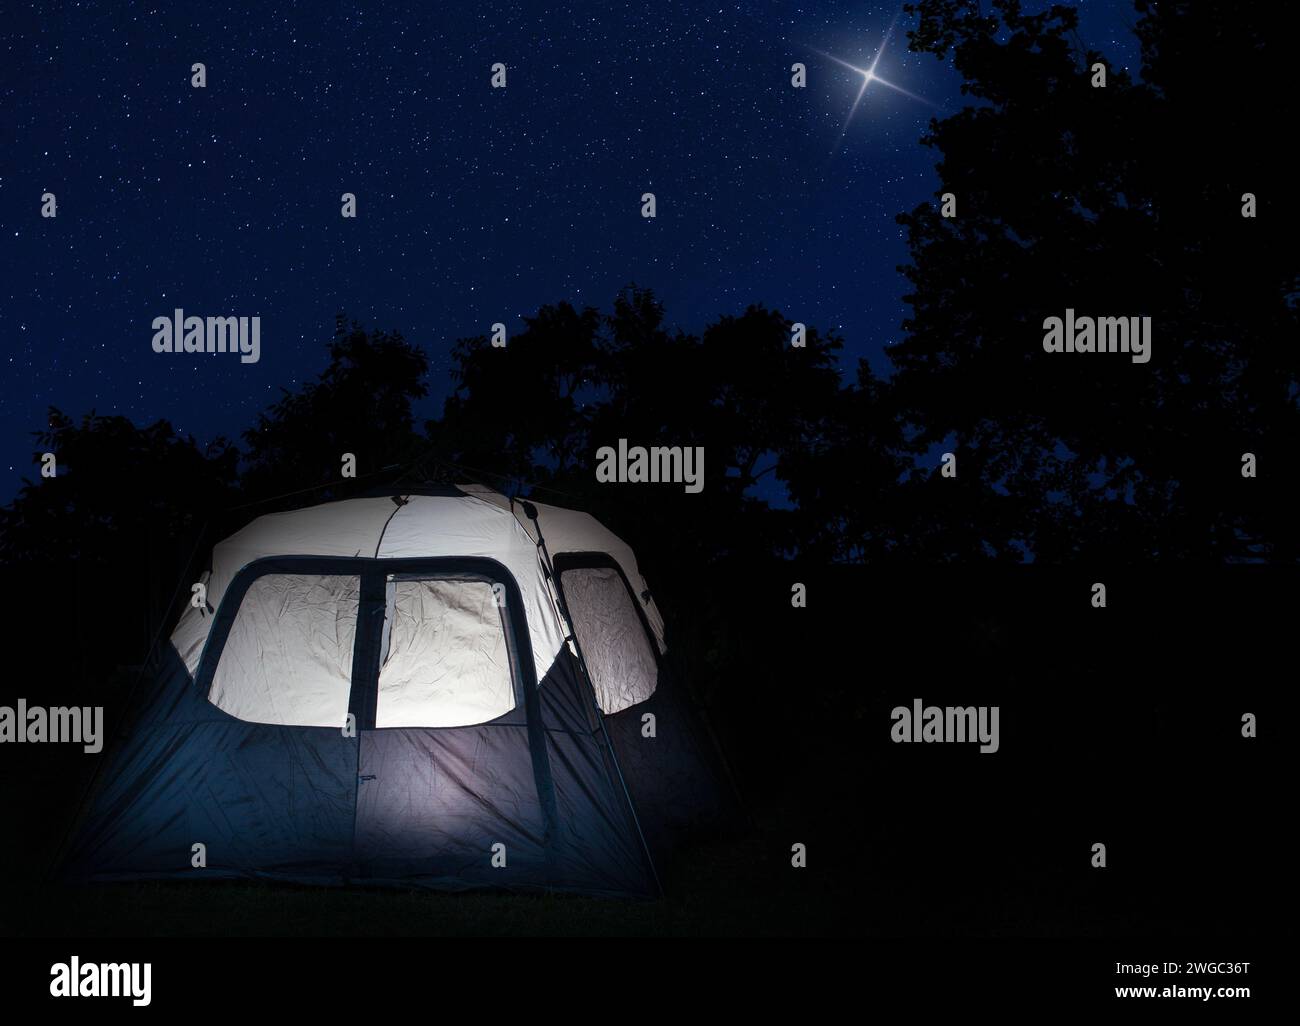 Grande tenda illuminata dall'interno, nei pressi di una foresta caratterizzata da stelle luminose, con una stella che risplende più luminosa nel cielo. Foto Stock